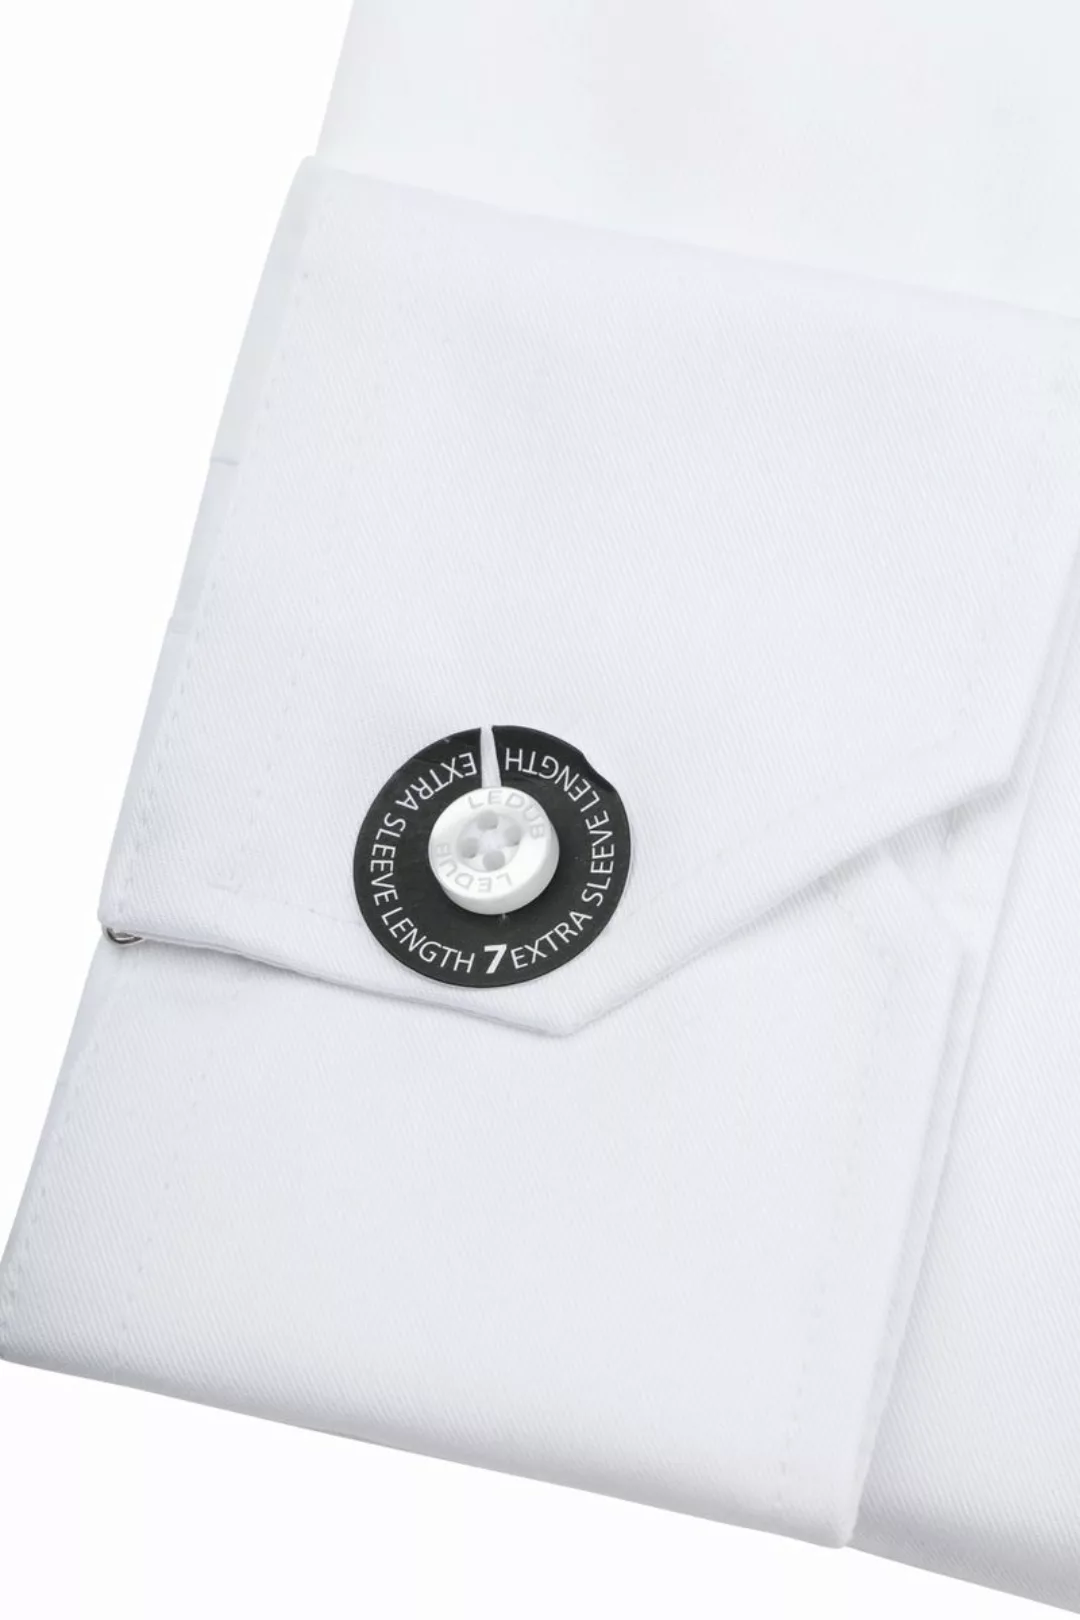 Ledub Hemd Weiß Brusttassche Extra Long Sleeves - Größe 40 günstig online kaufen